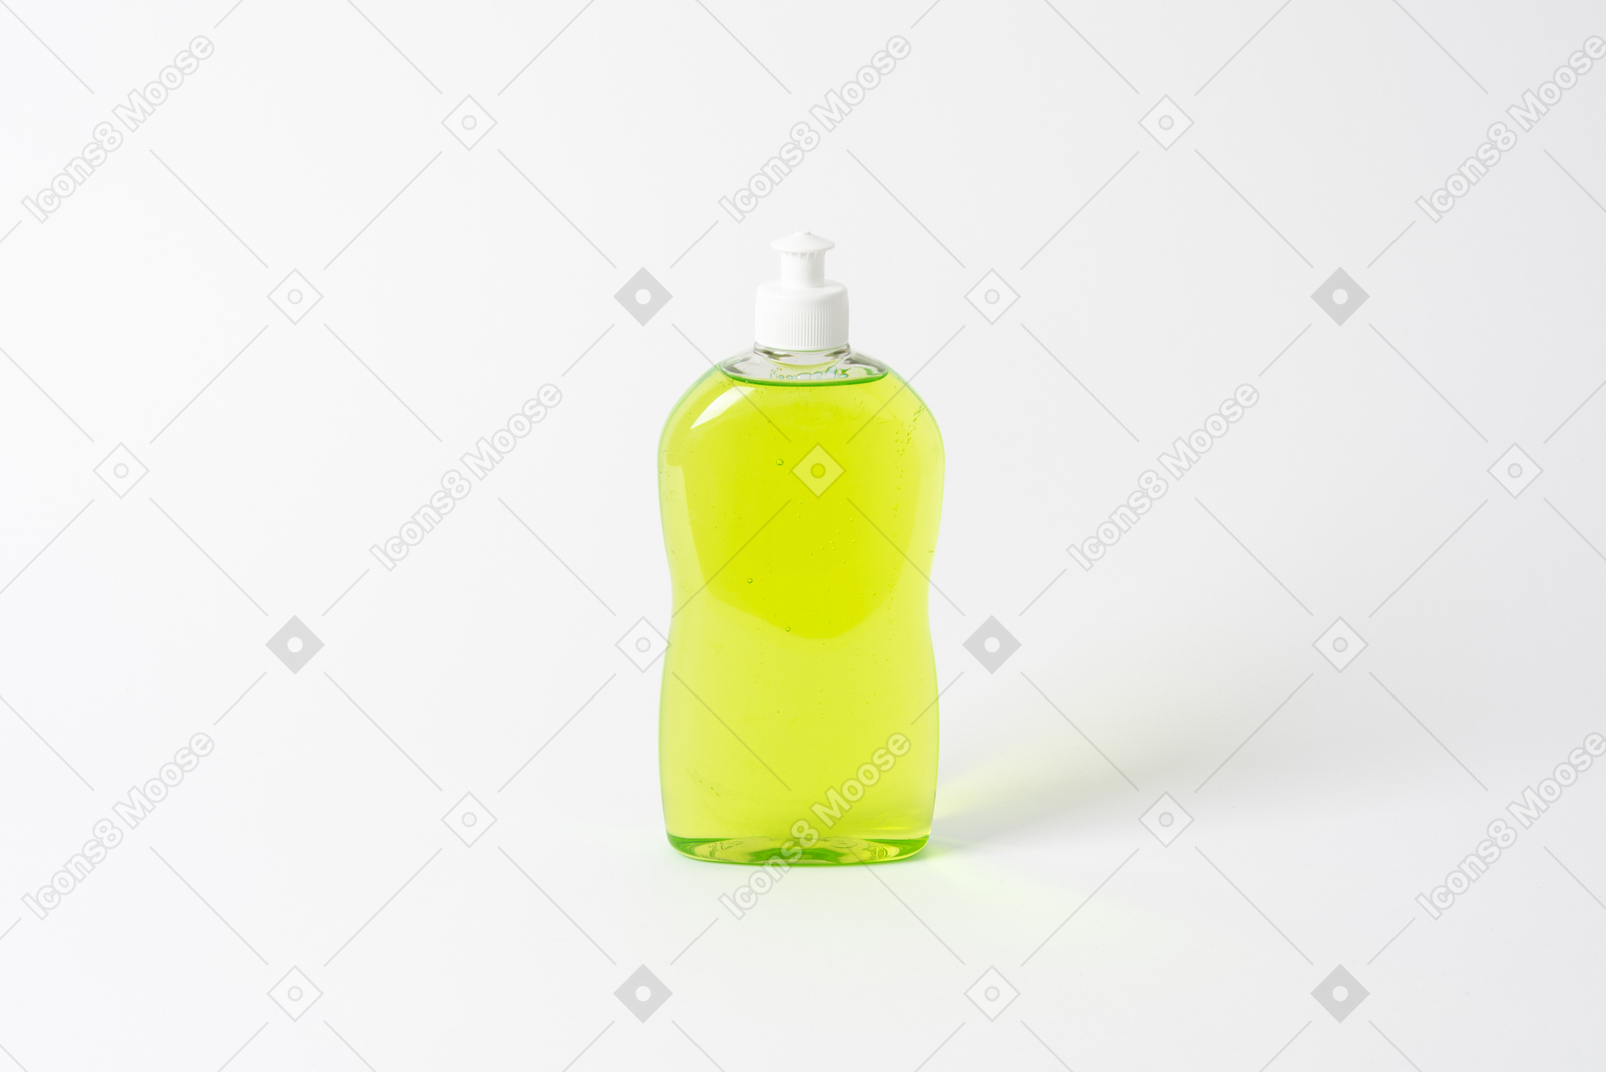 Dishwashing detergent dispenser bottle